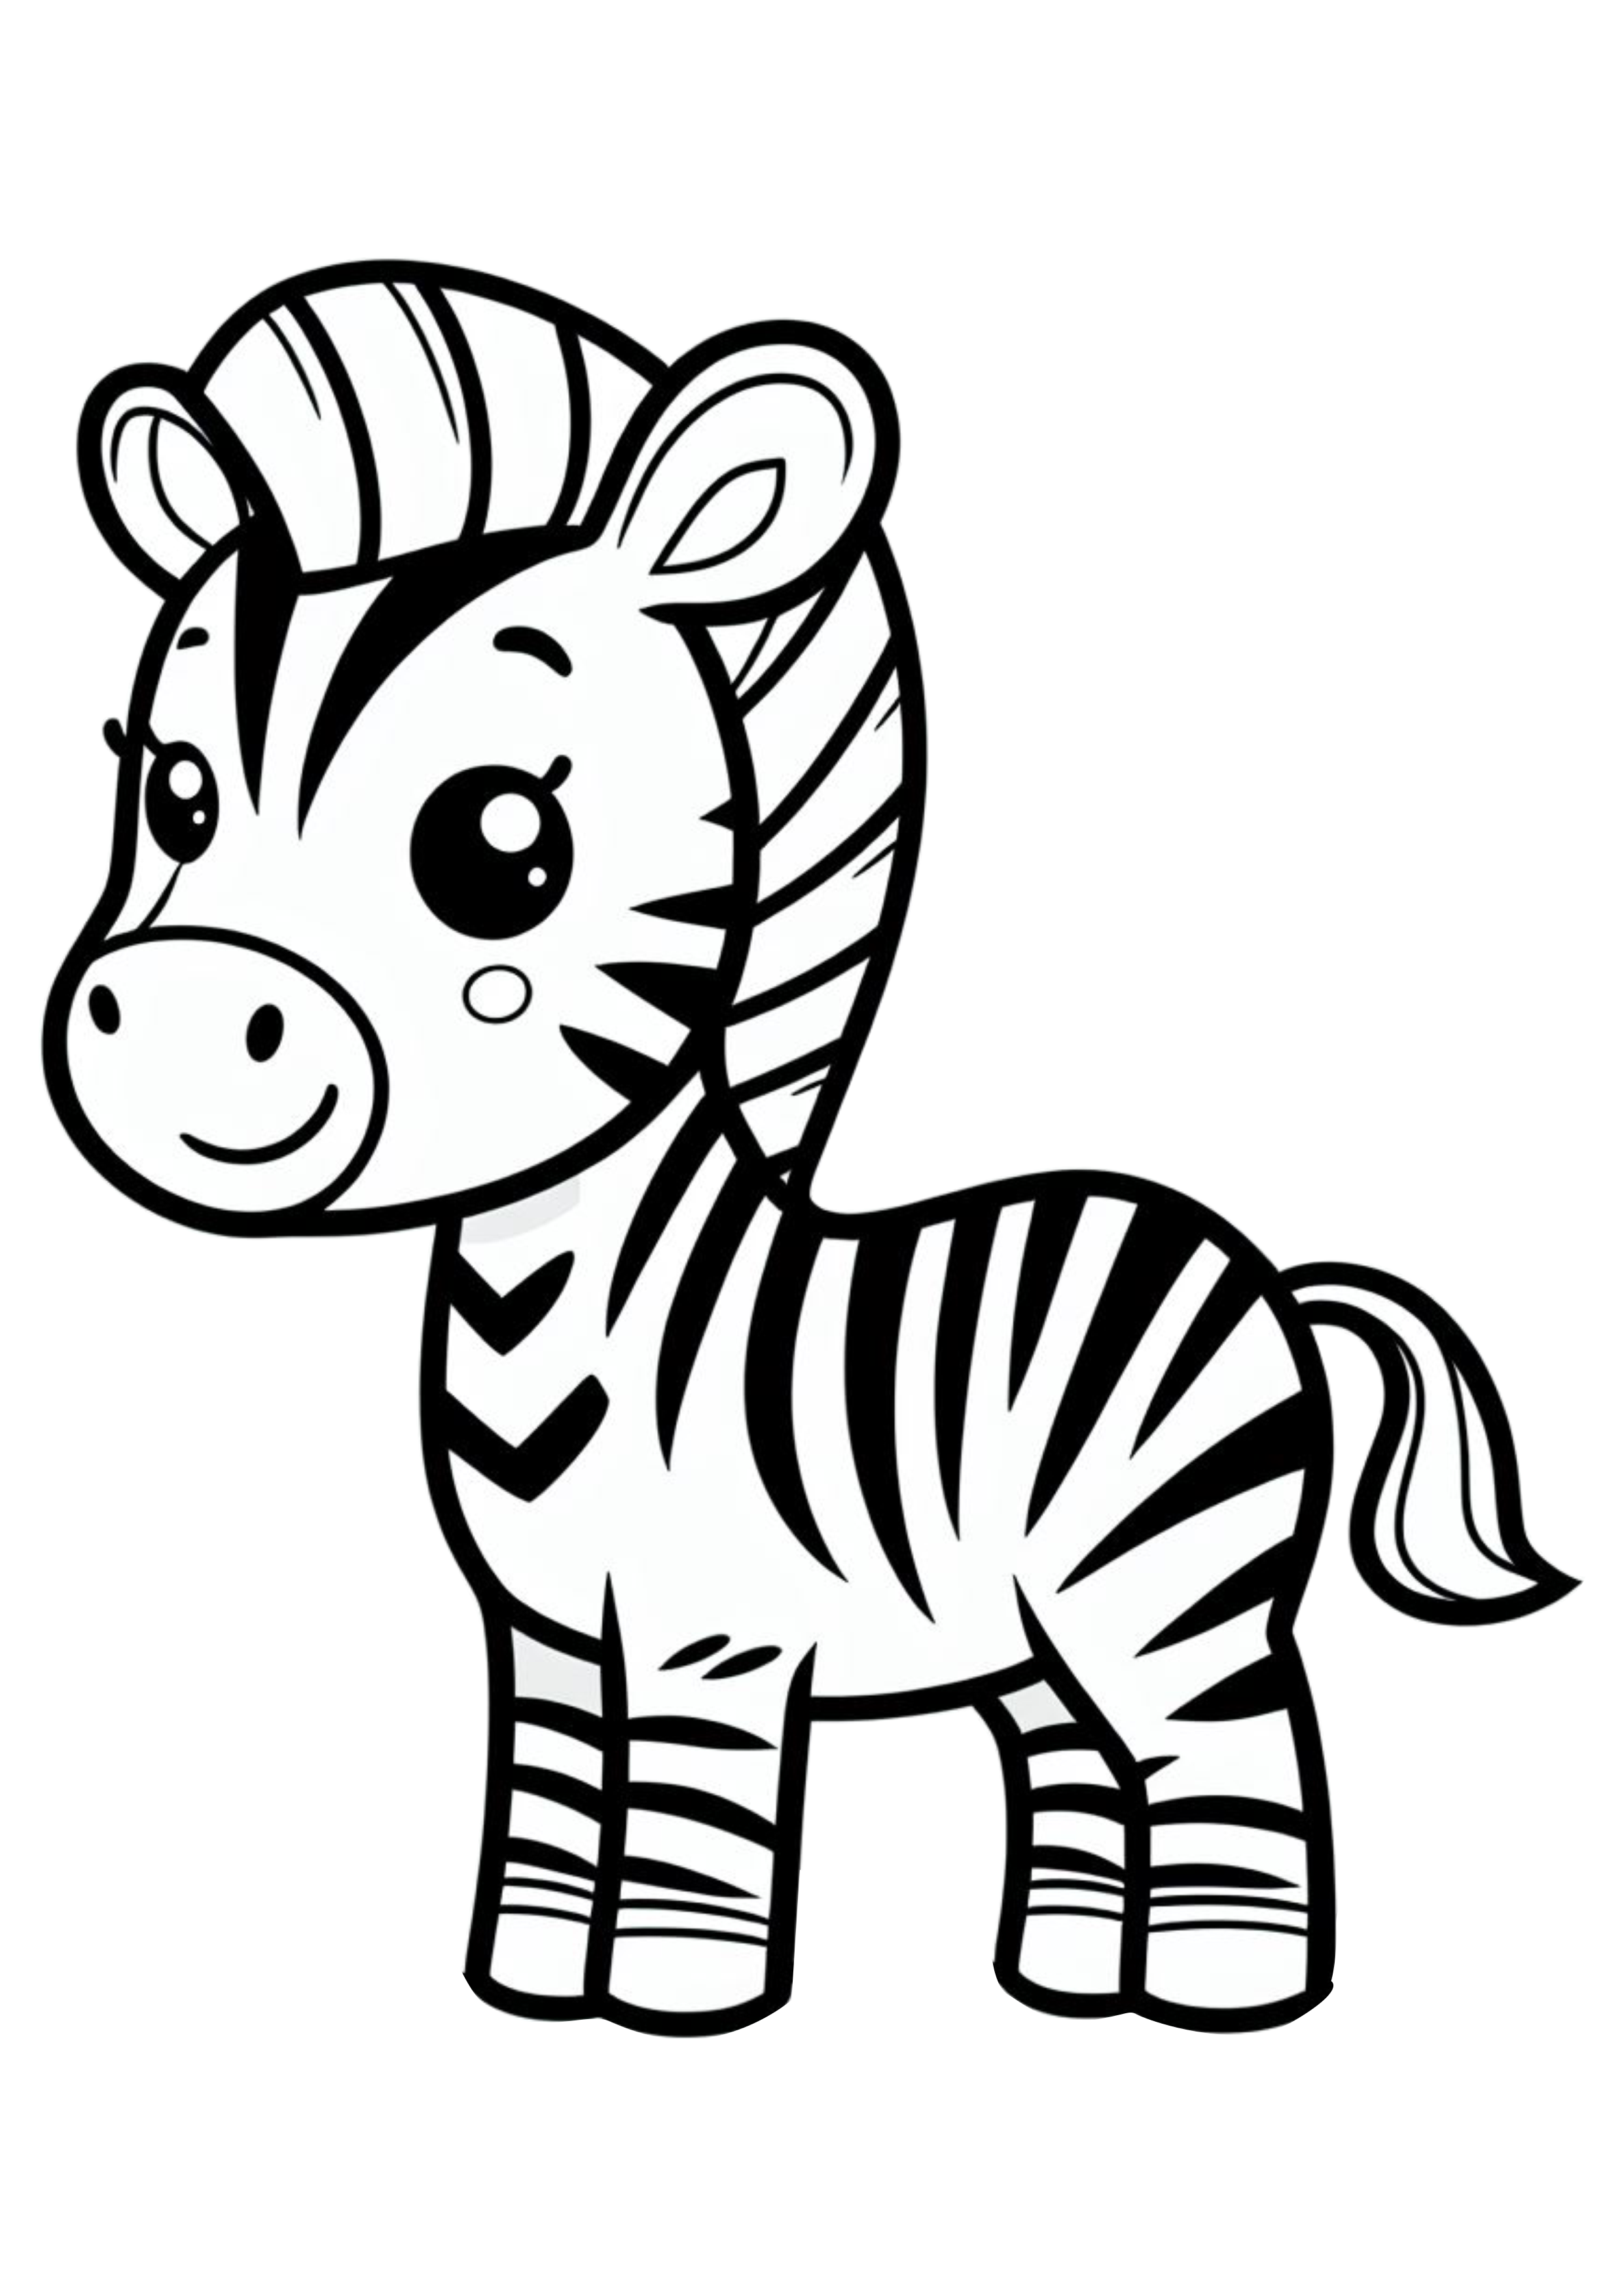 Zebra fofinha png desenho simples